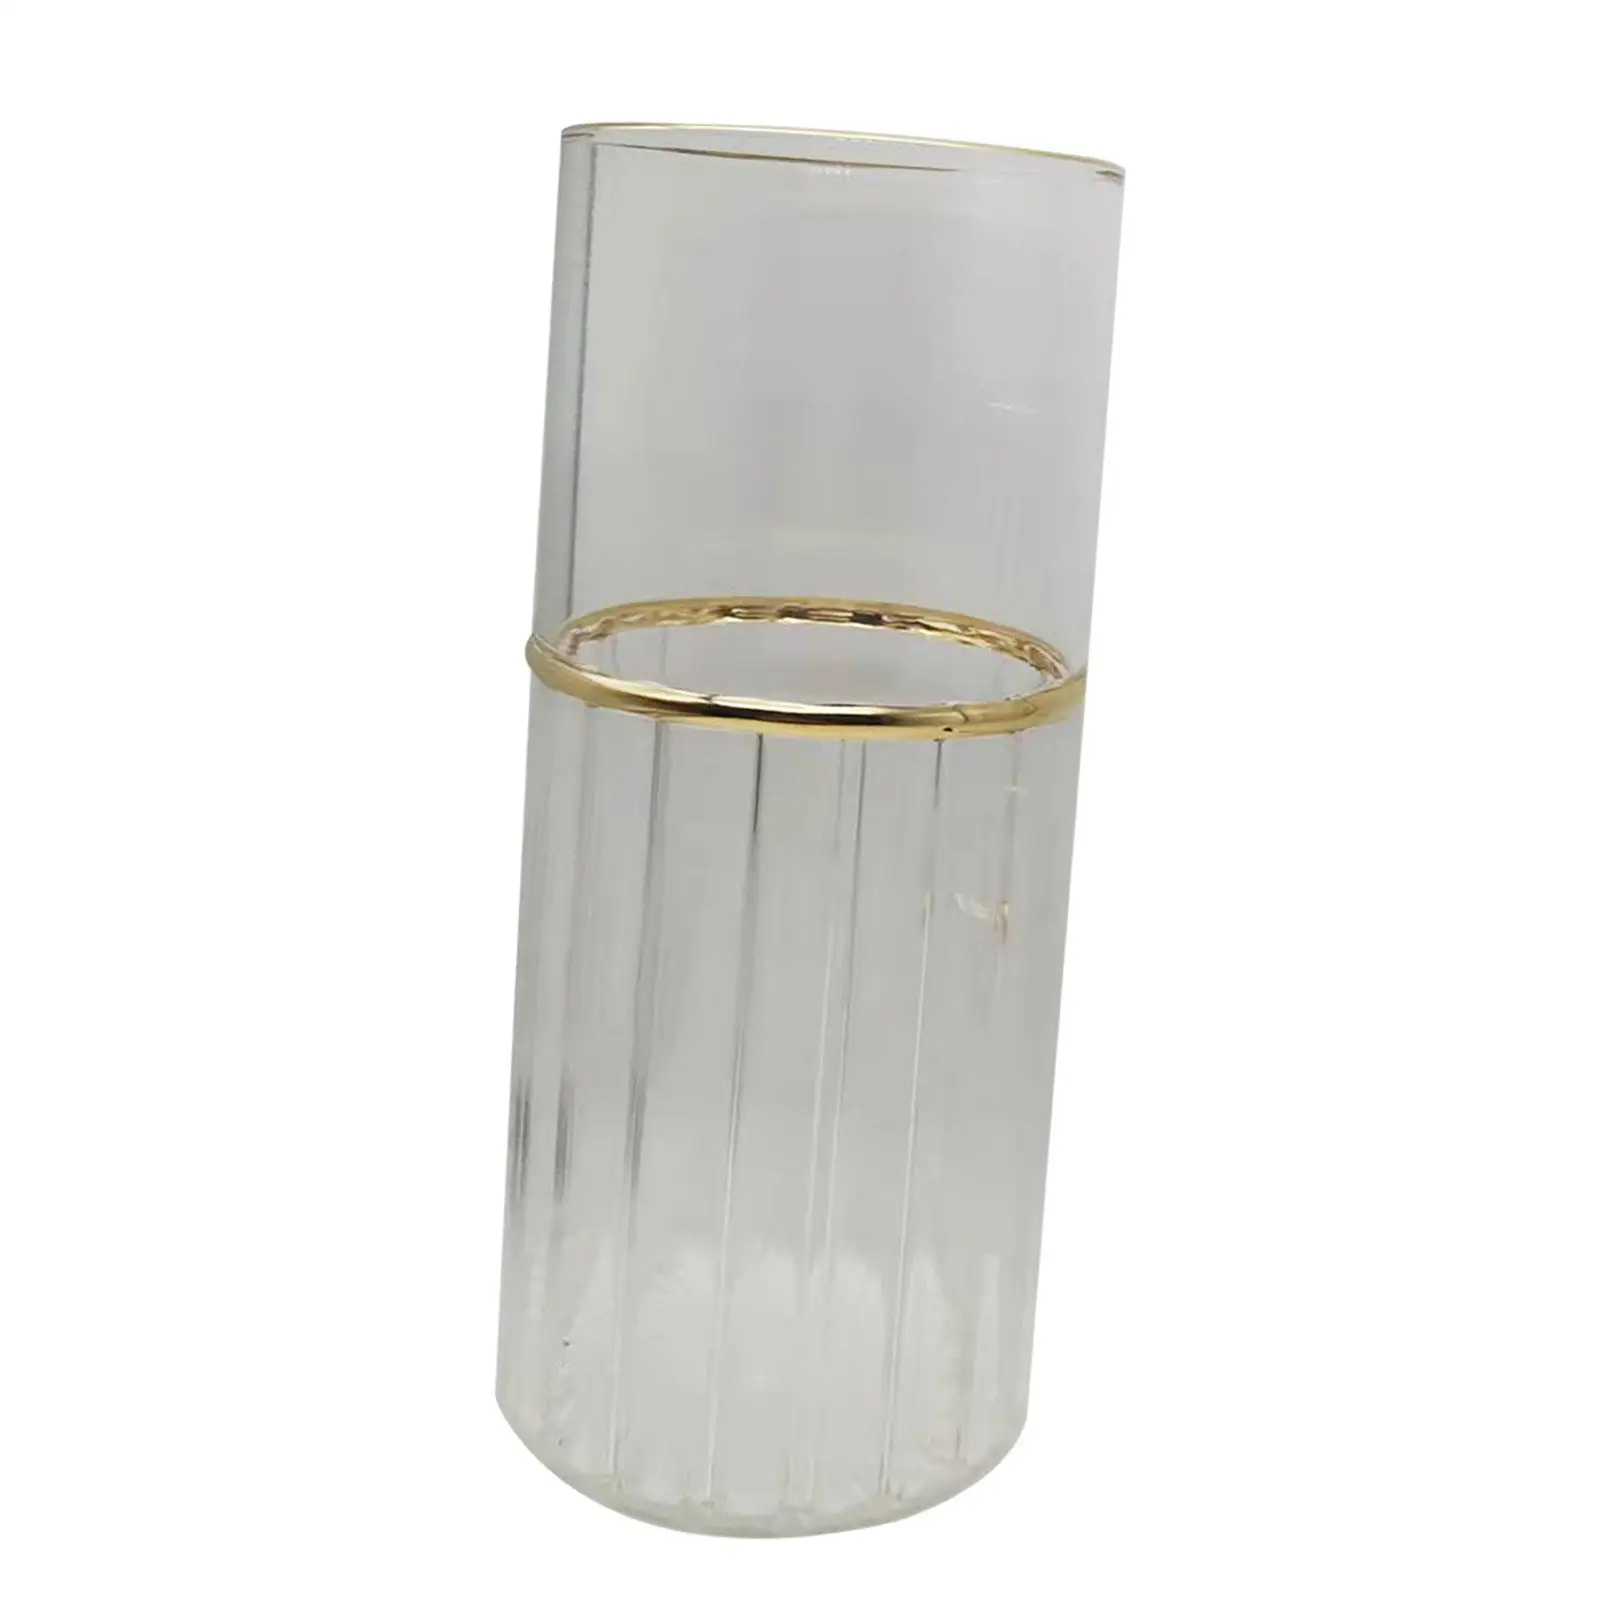 Transparent Glass Flower Vase Bottle for Centerpieces Decor Excellent Workmanship Durable Home Decor Striped Lines Multipurpose